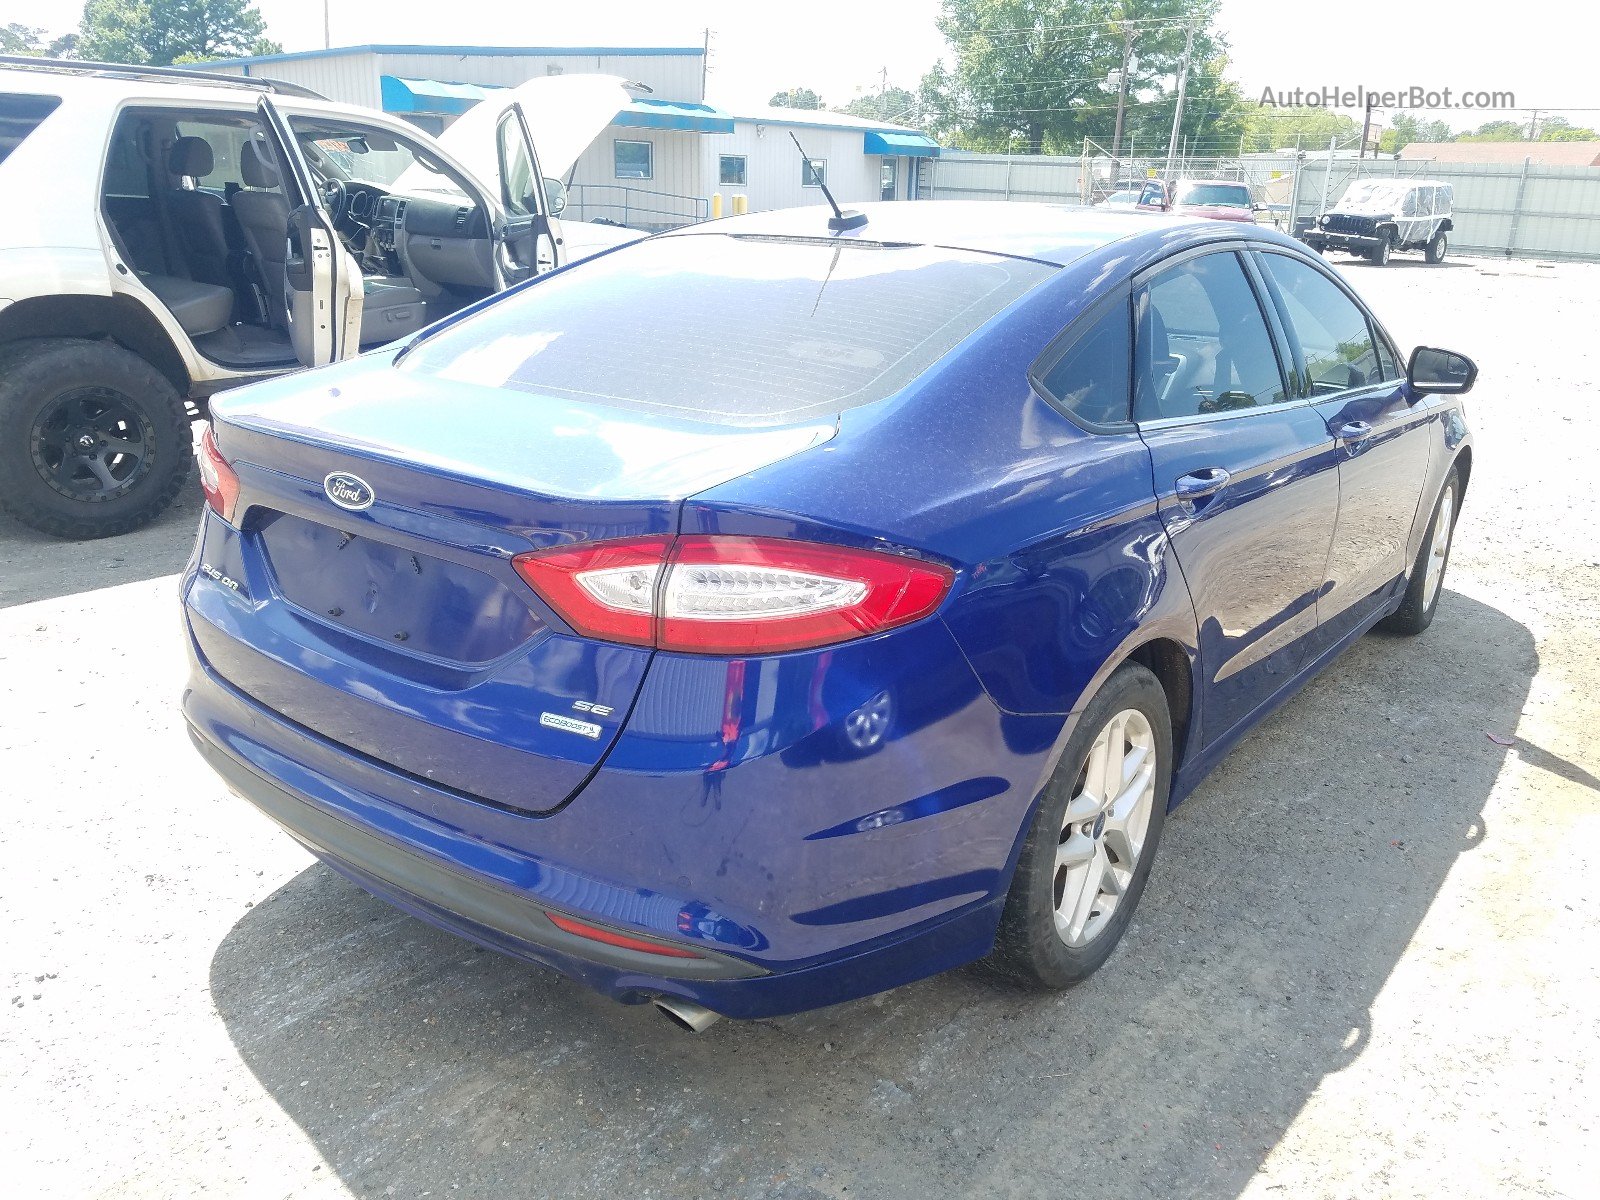 2013 Ford Fusion Se Синий vin: 3FA6P0HR6DR275554